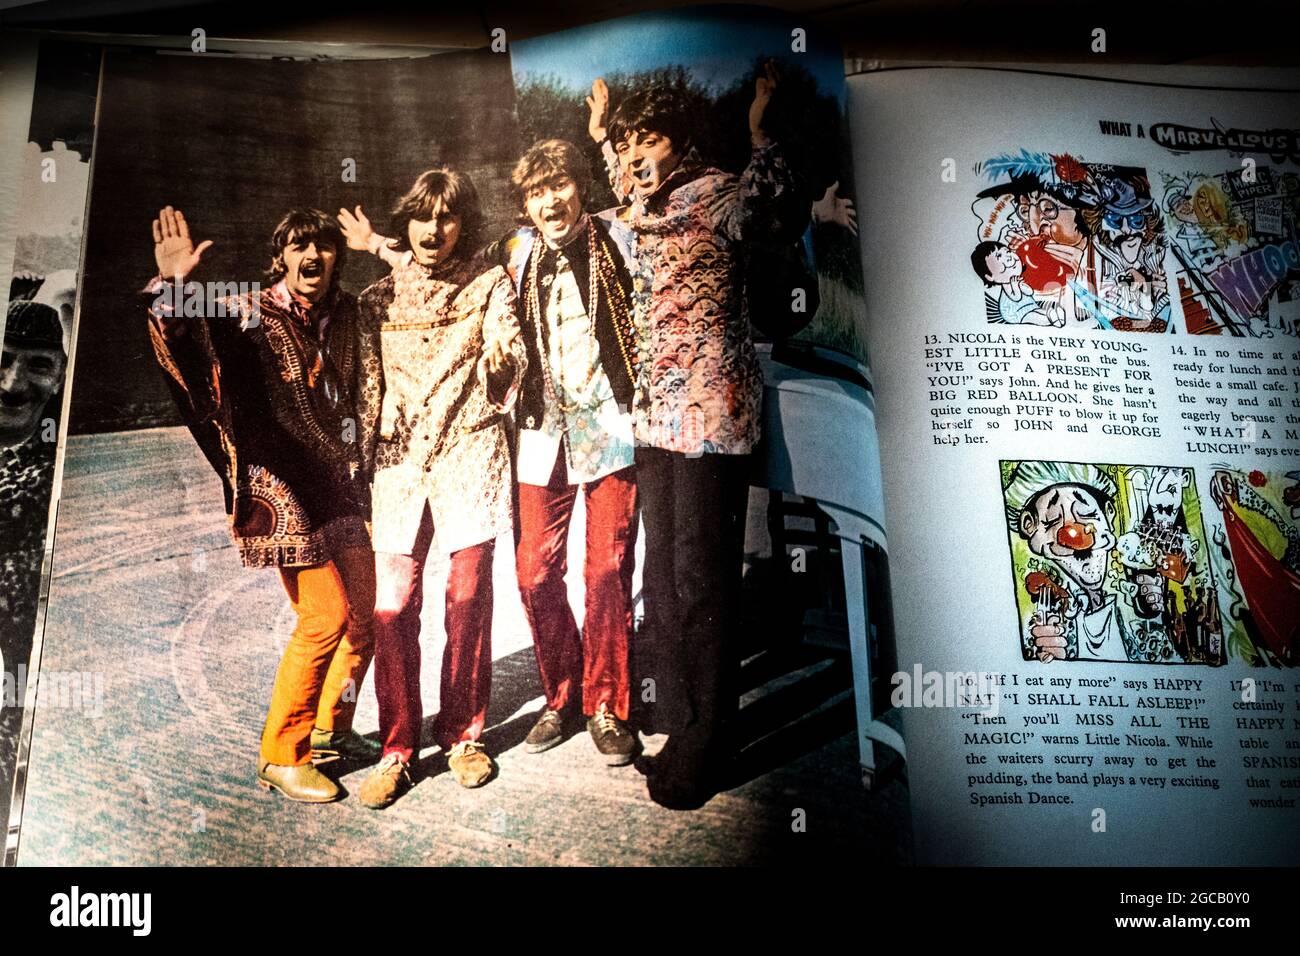 Gros plan sur la photographie et le dessin animé d'un membre du groupe dans le livre de photos inclus avec le disque en vinyle de Beatles Magical Mystery Tour Banque D'Images